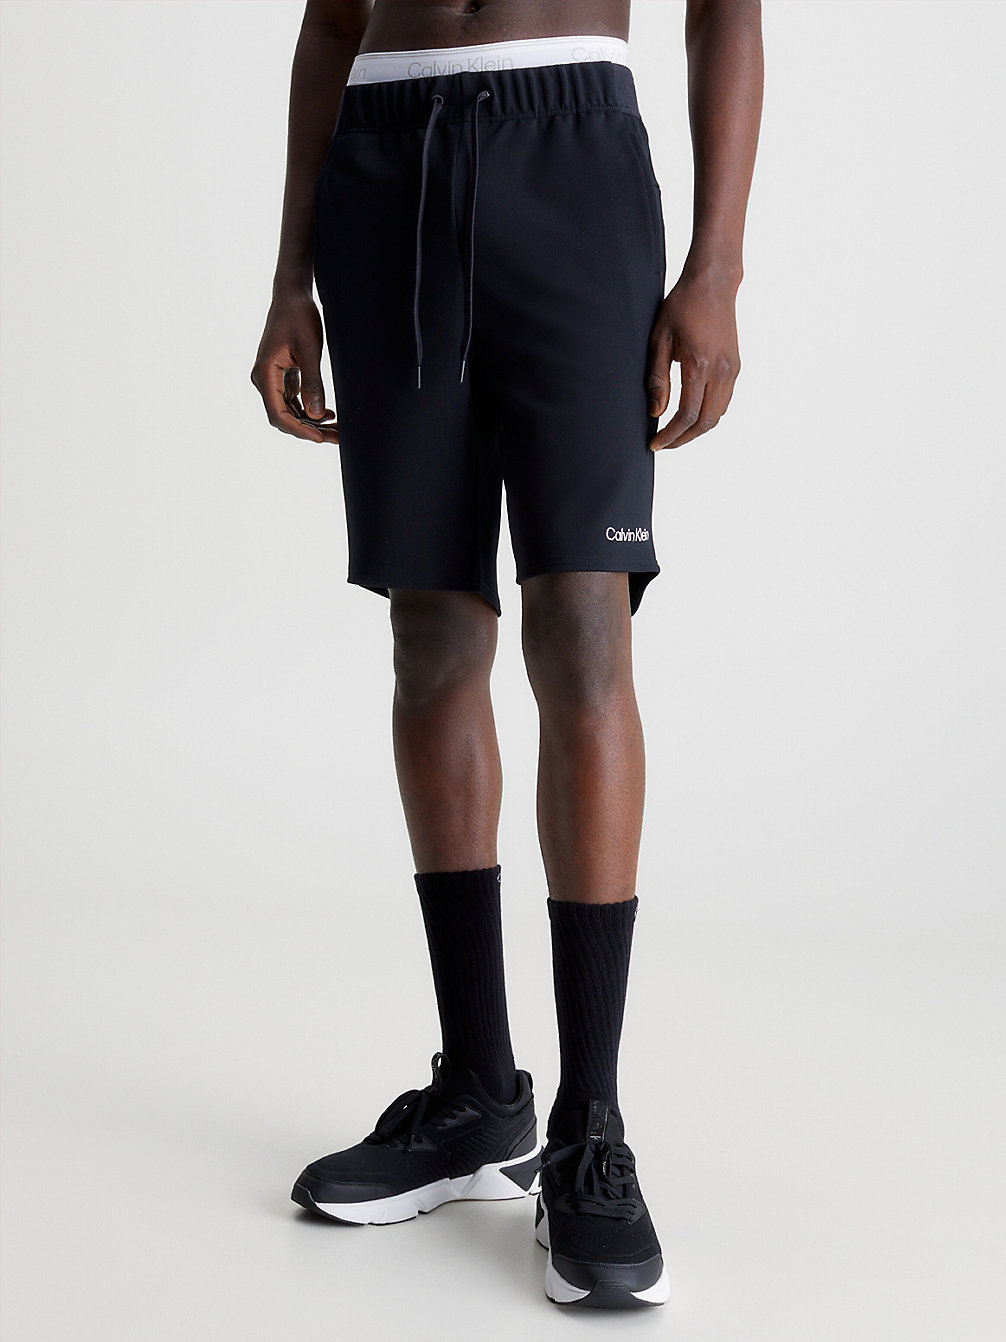 BLACK BEAUTY > Textured Gym Shorts > undefined женщины - Calvin Klein